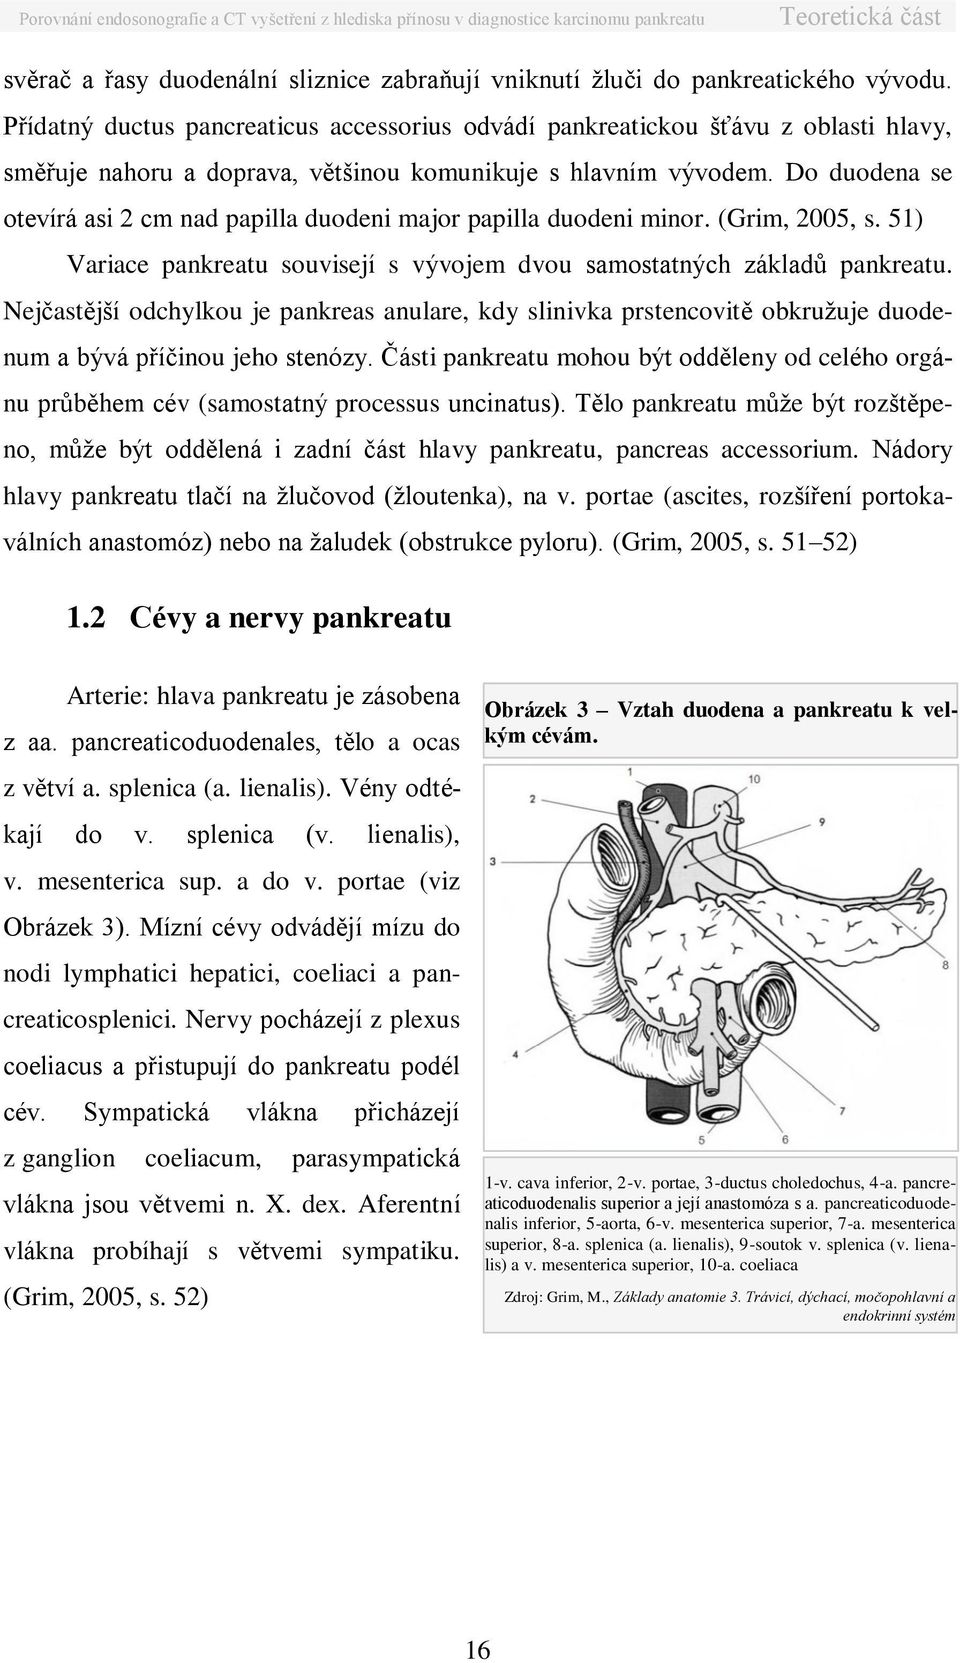 Do duodena se otevírá asi 2 cm nad papilla duodeni major papilla duodeni minor. (Grim, 2005, s. 51) Variace pankreatu souvisejí s vývojem dvou samostatných základů pankreatu.